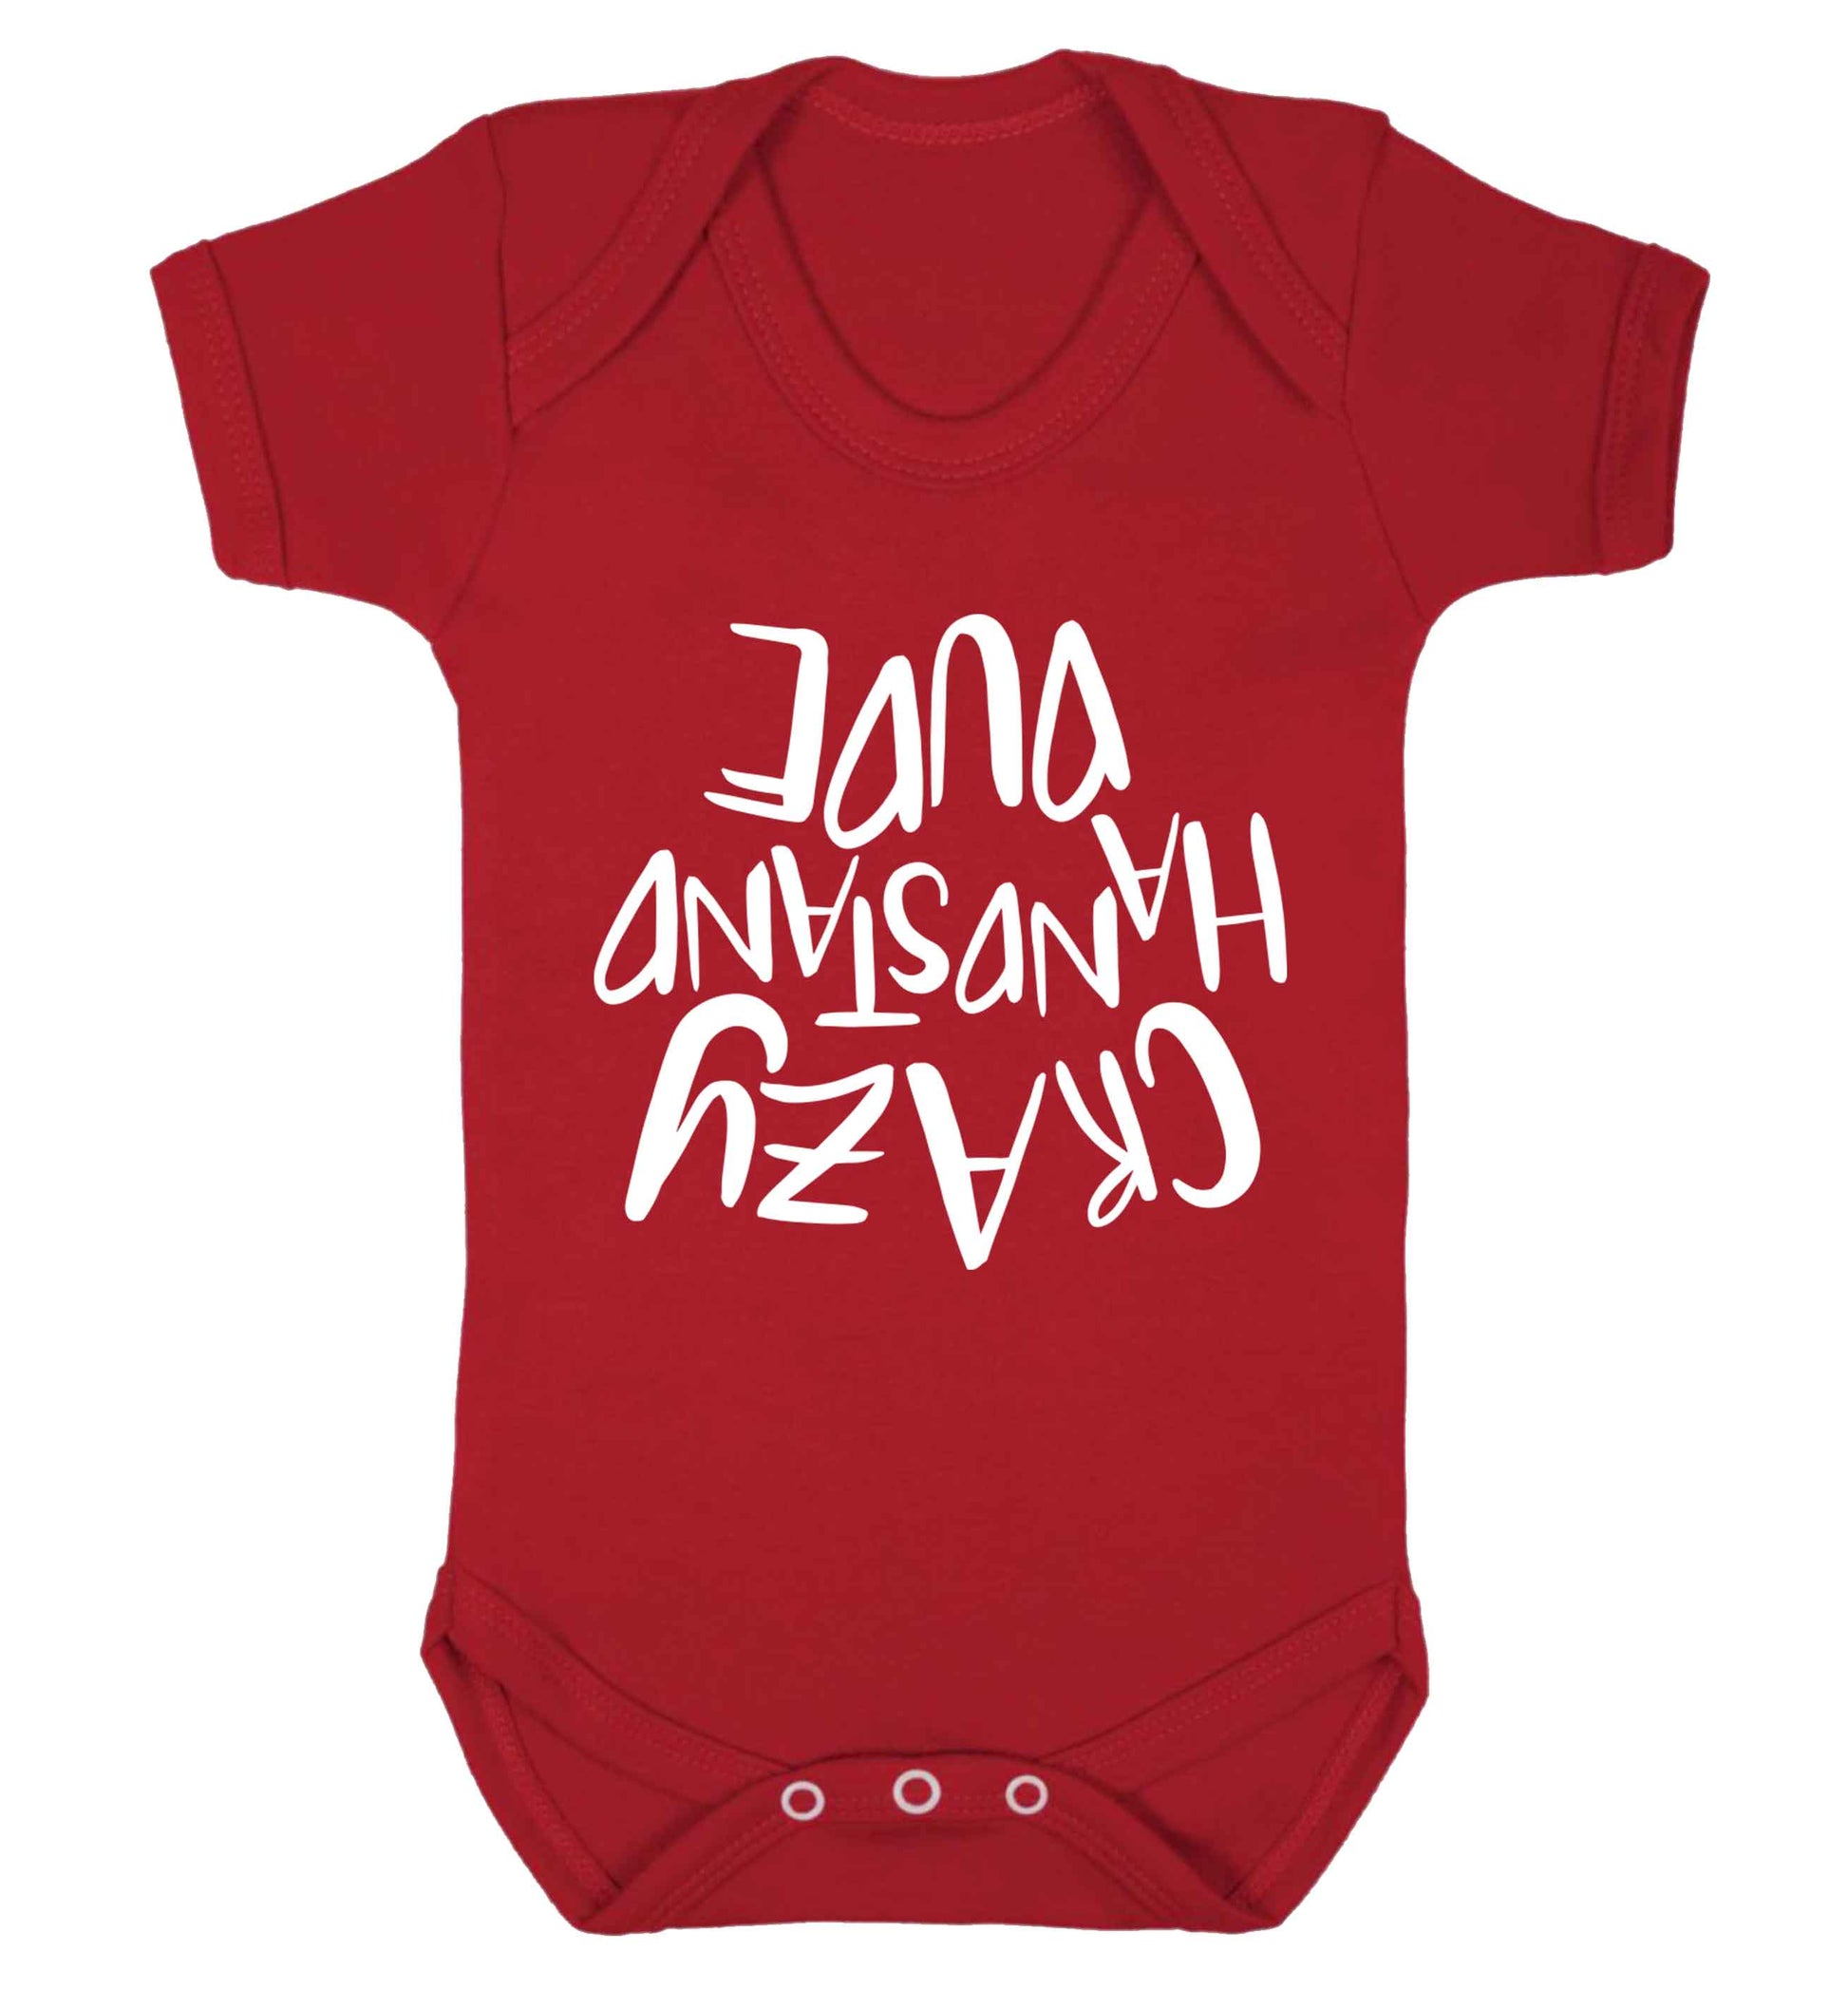 Crazy handstand dude Baby Vest red 18-24 months